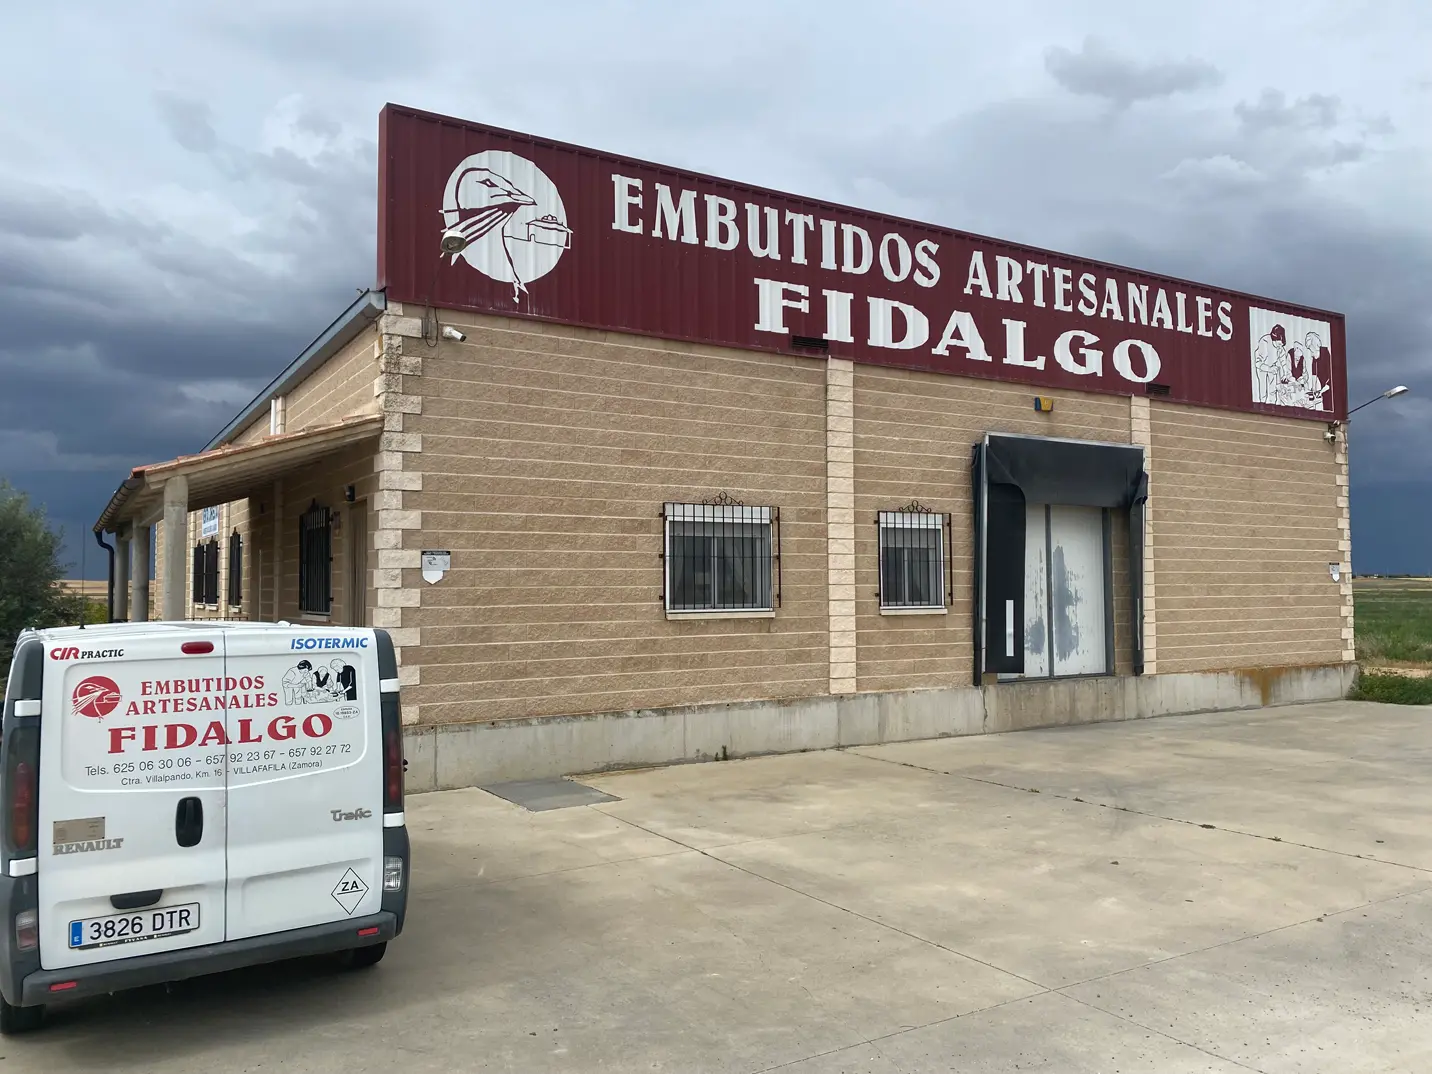 Embutidos Artesanales Fidalgo fachada y furgoneta.webp